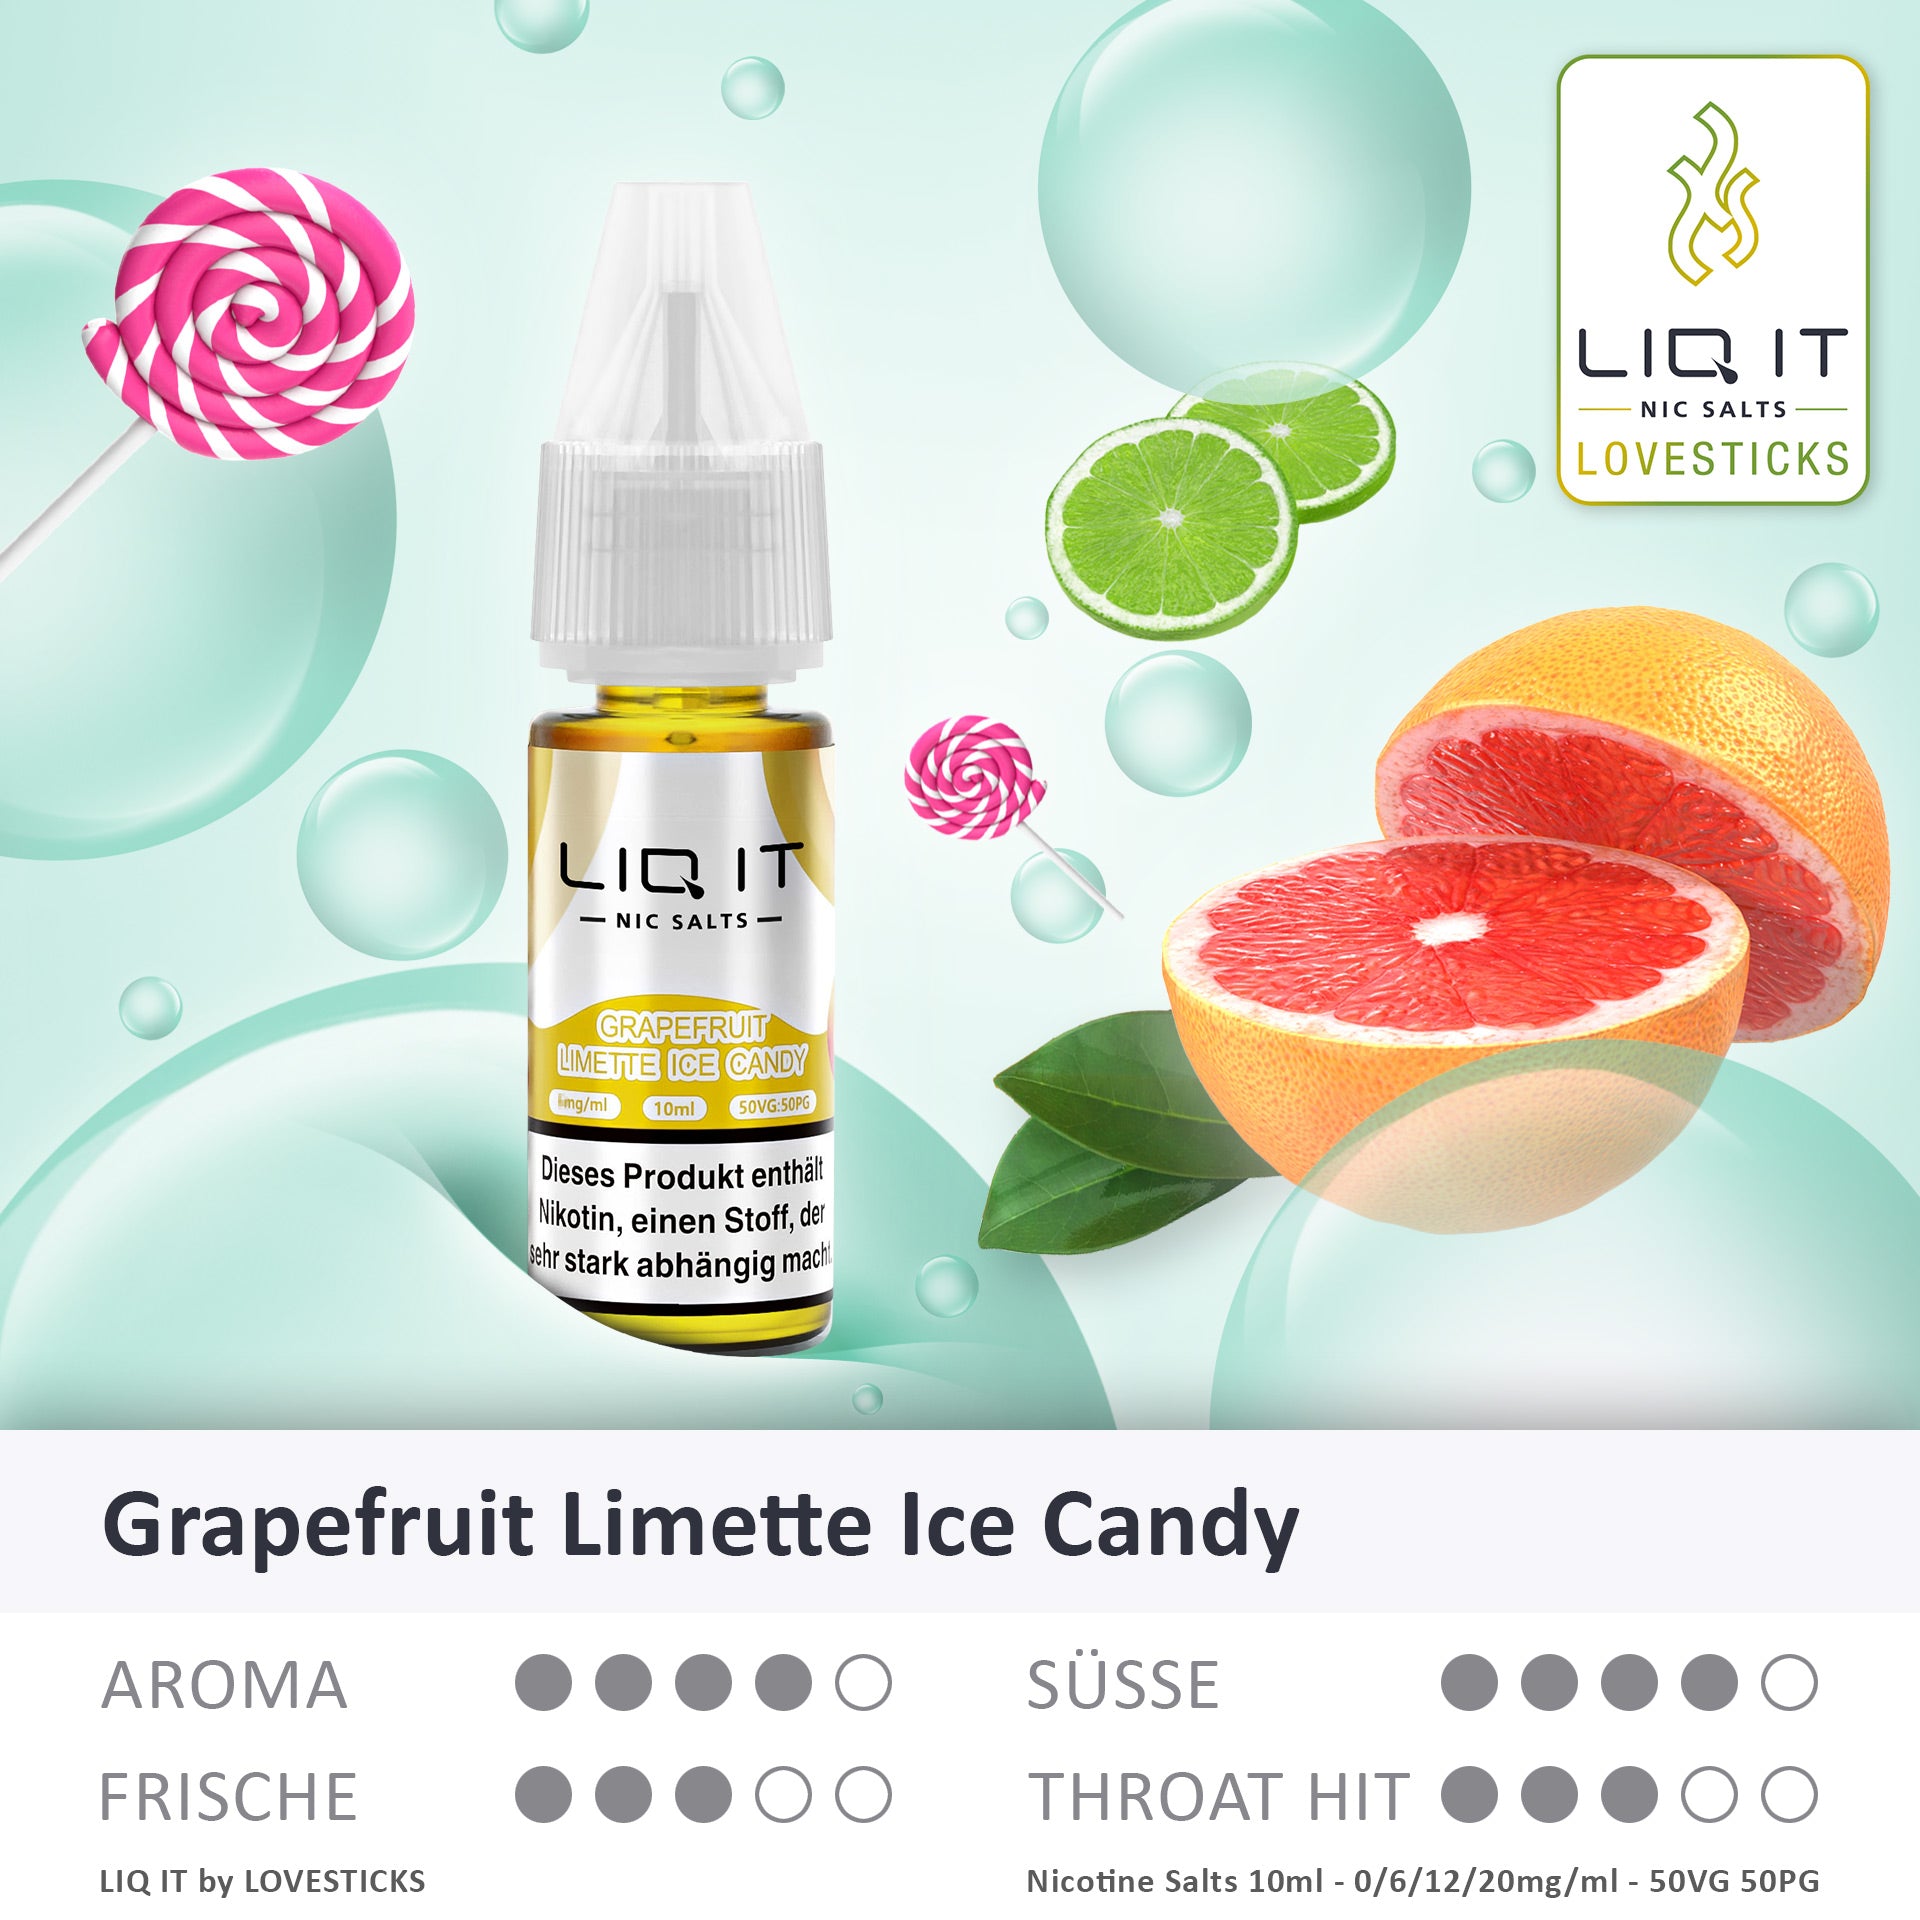 GRAPEFRUIT LIMETTE ICE CANDY - LIQ IT 20MG/ML (8821218410828)